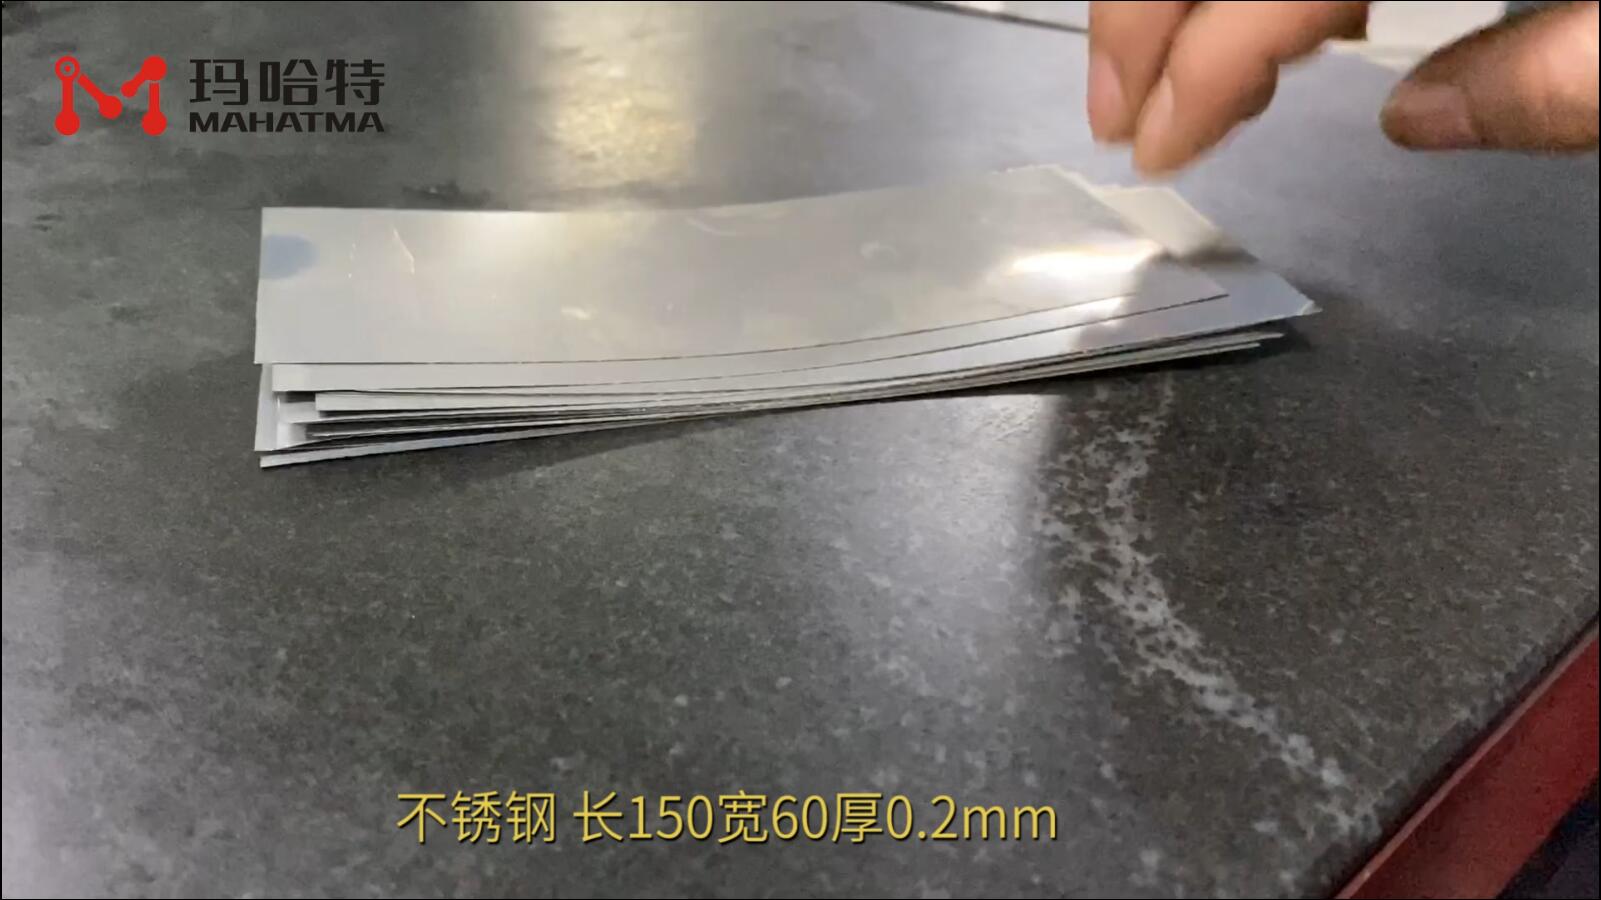 不锈钢 MHT15-300 长方形 长150宽60厚0.2mm